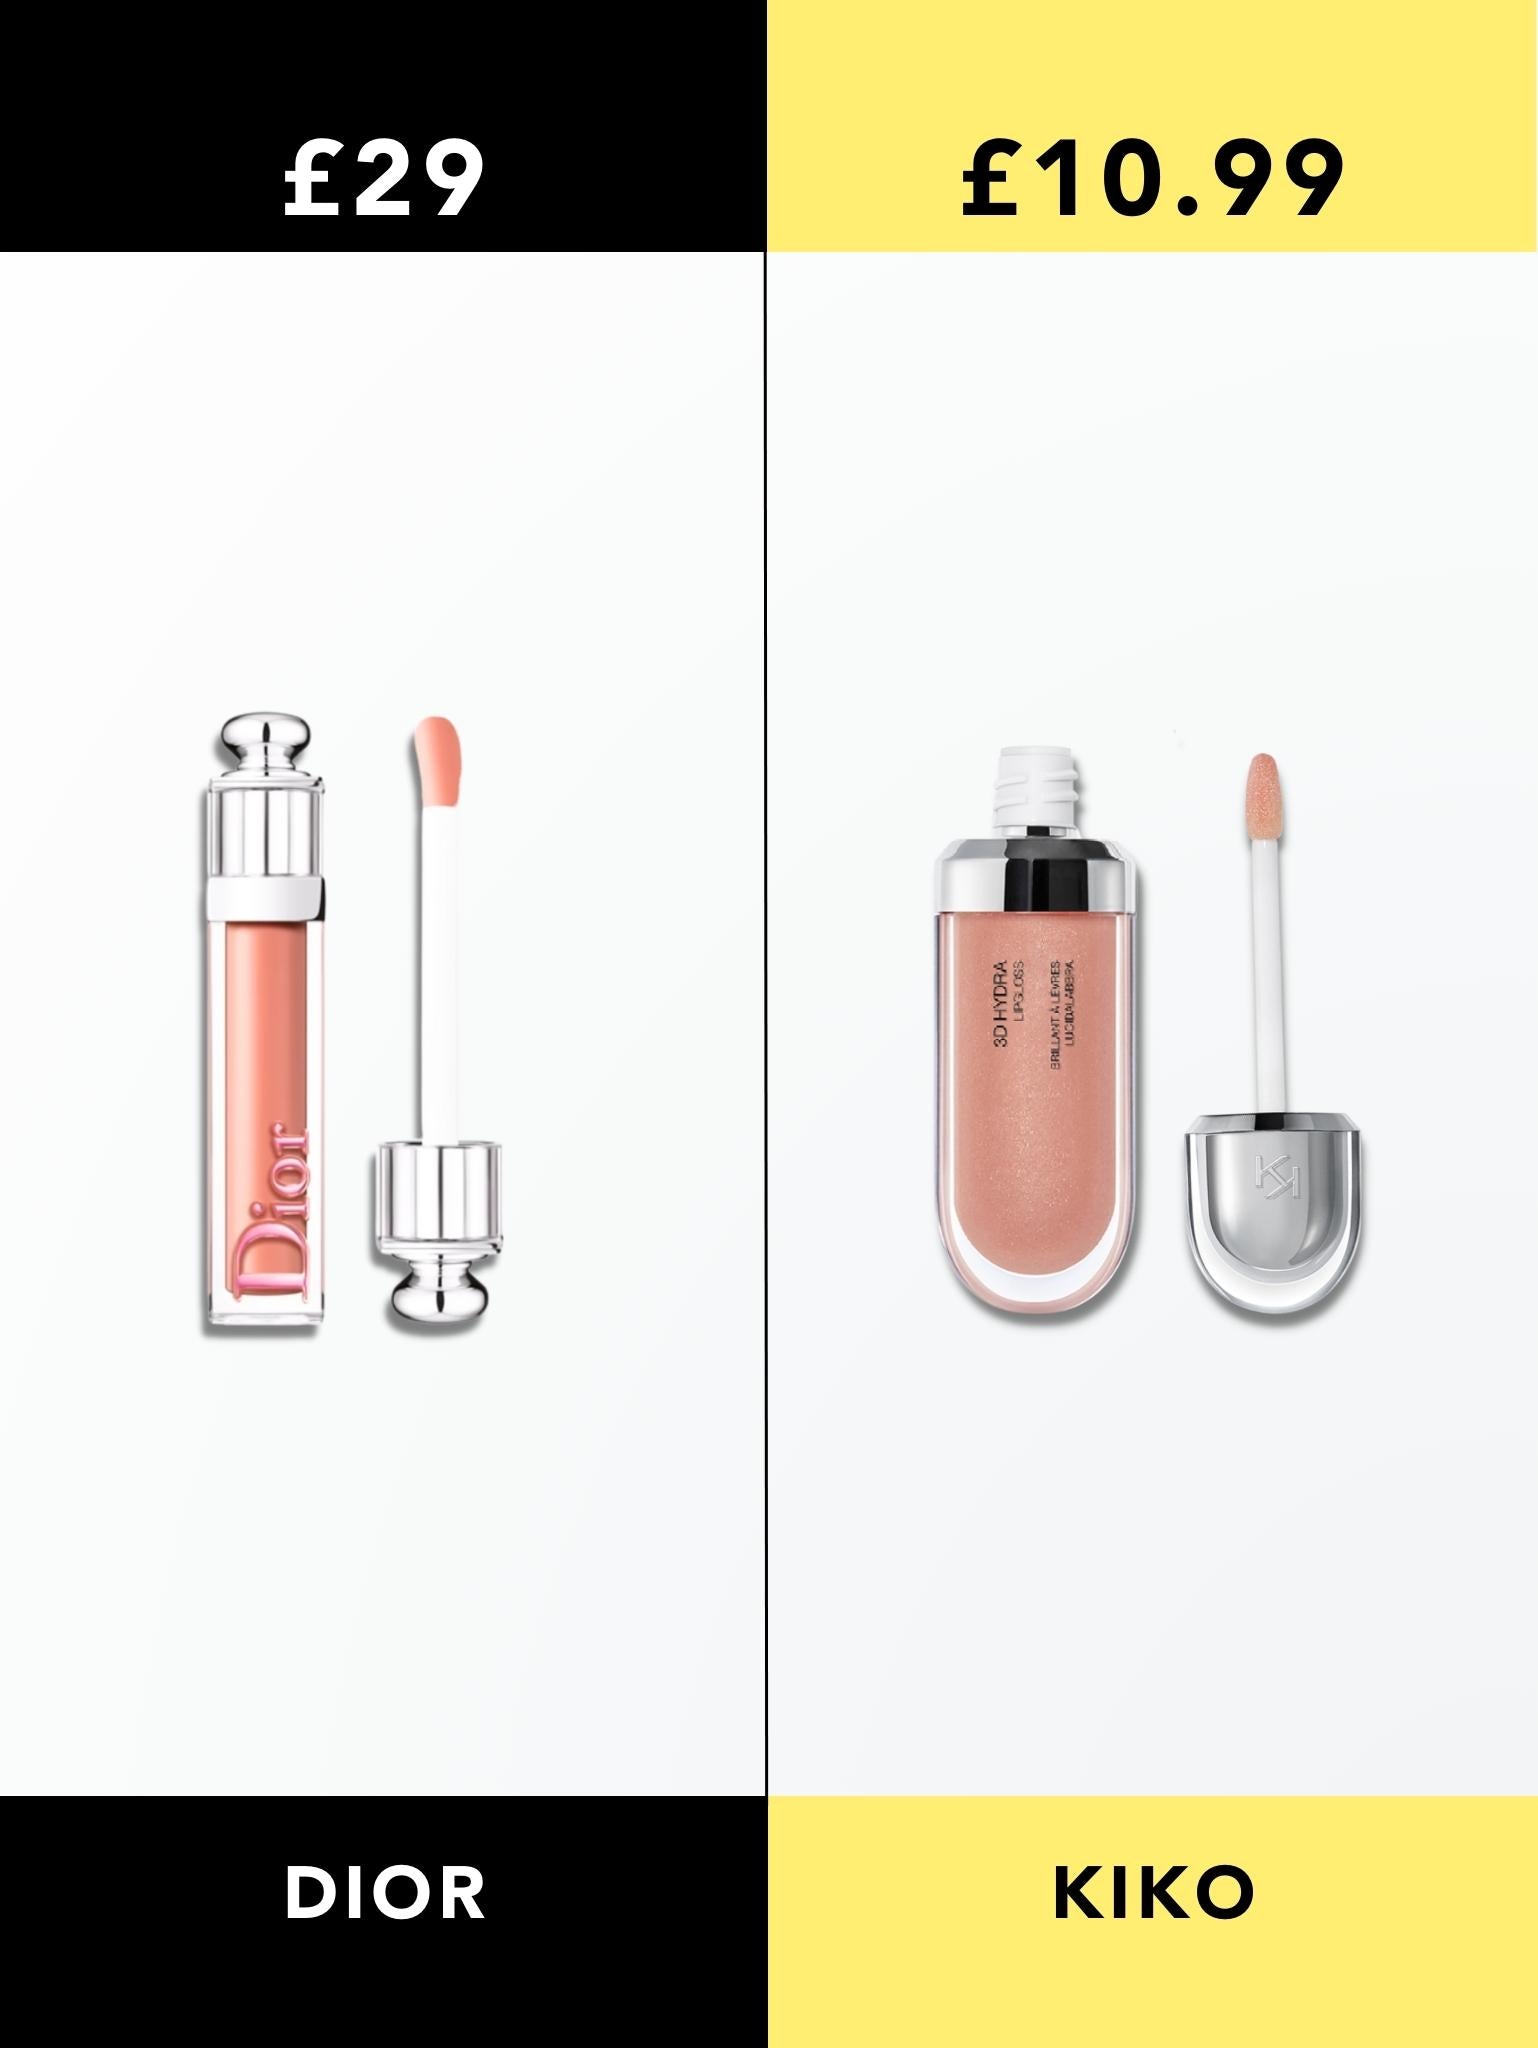 Dior Addict Stellar Gloss vs Kiko 3D Hydra Lipgloss